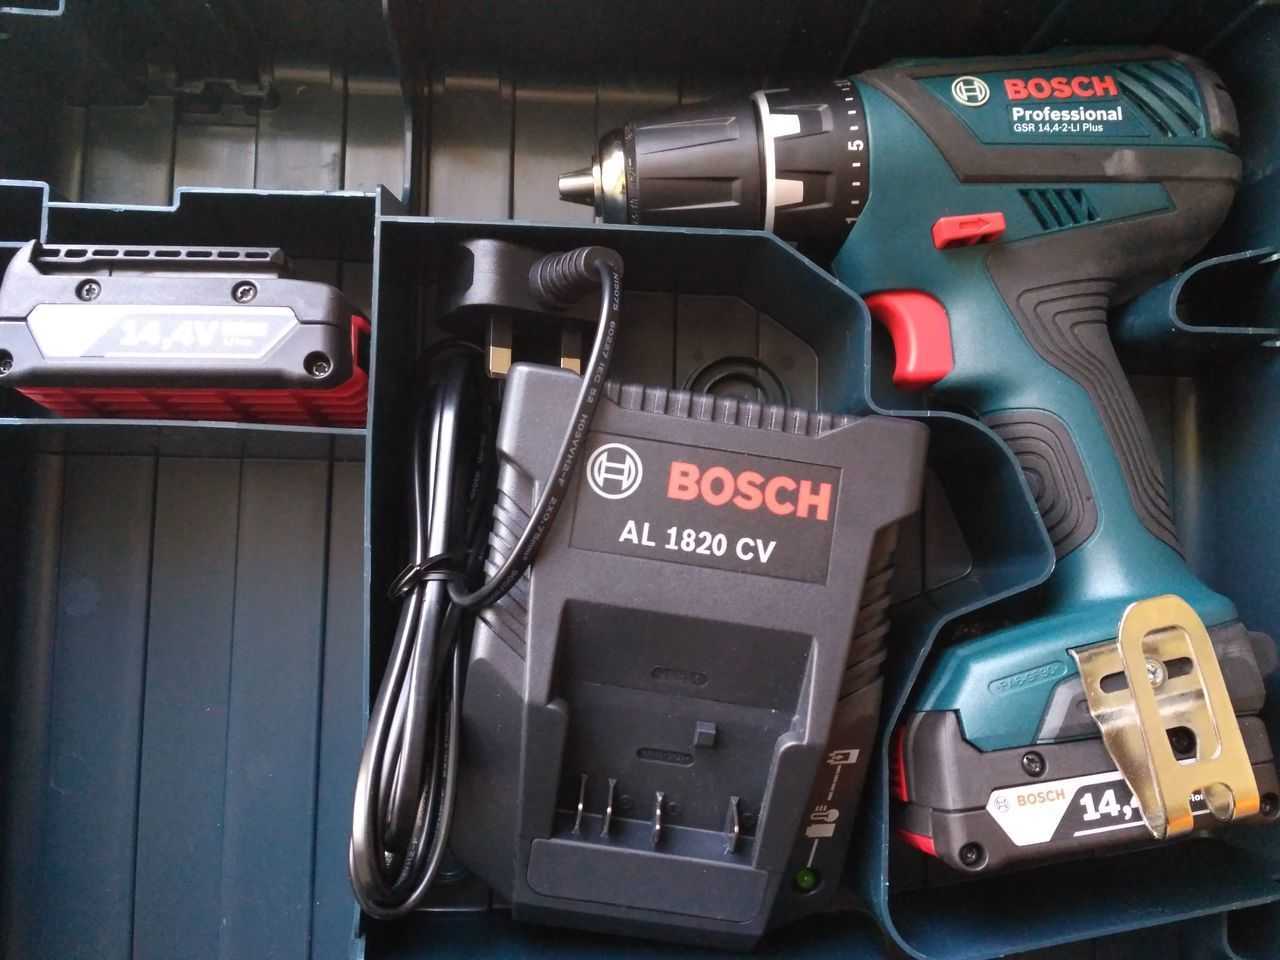 Bosch gsb 180-li 1.5ah x2 case отзывы покупателей и специалистов на отзовик